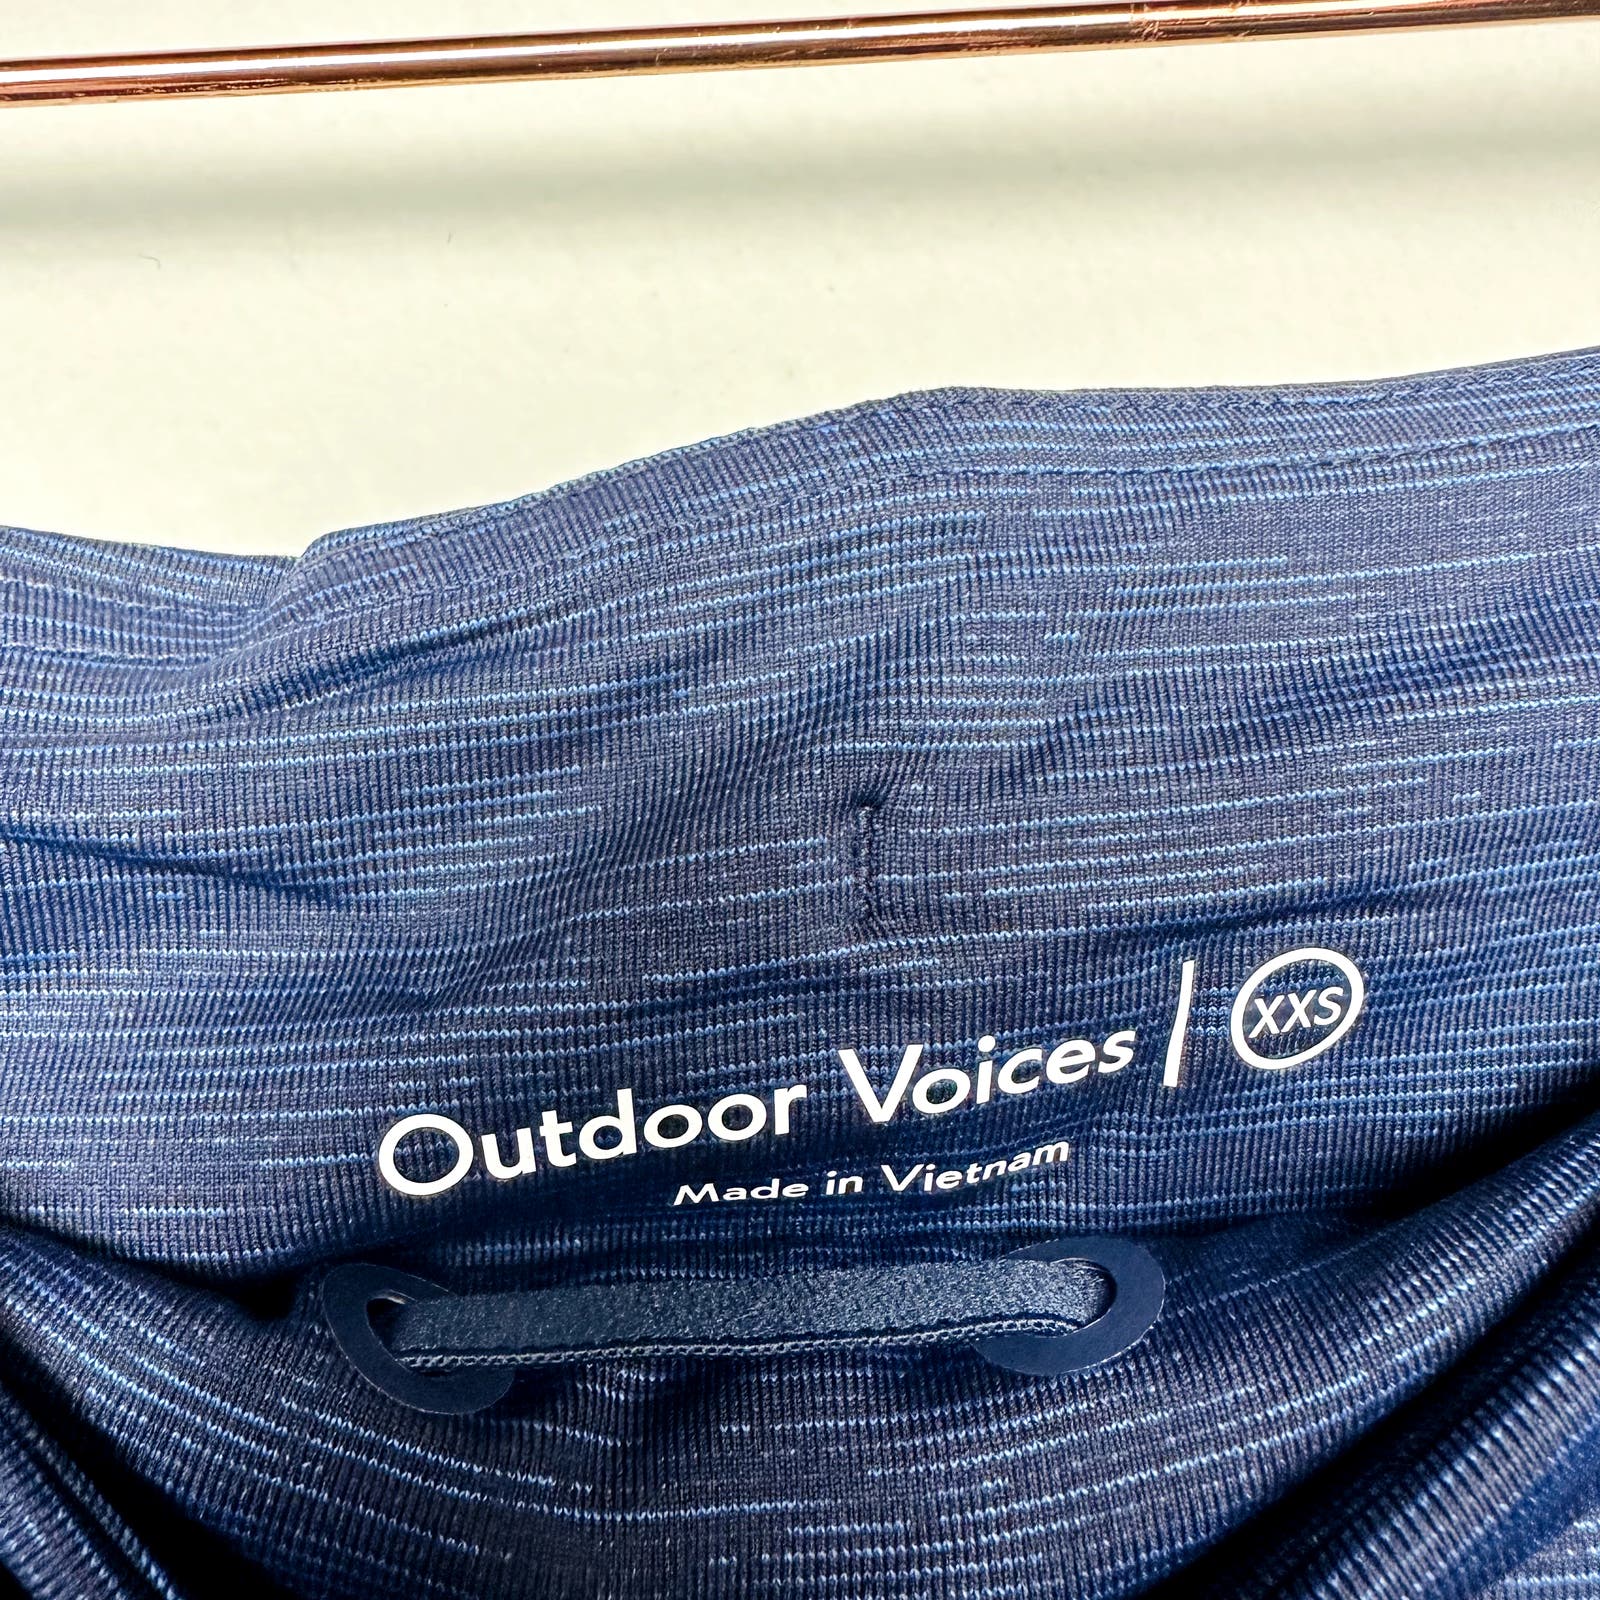 Outdoor Voices NWT Blue  Hudson 4" Skort Size 2XS